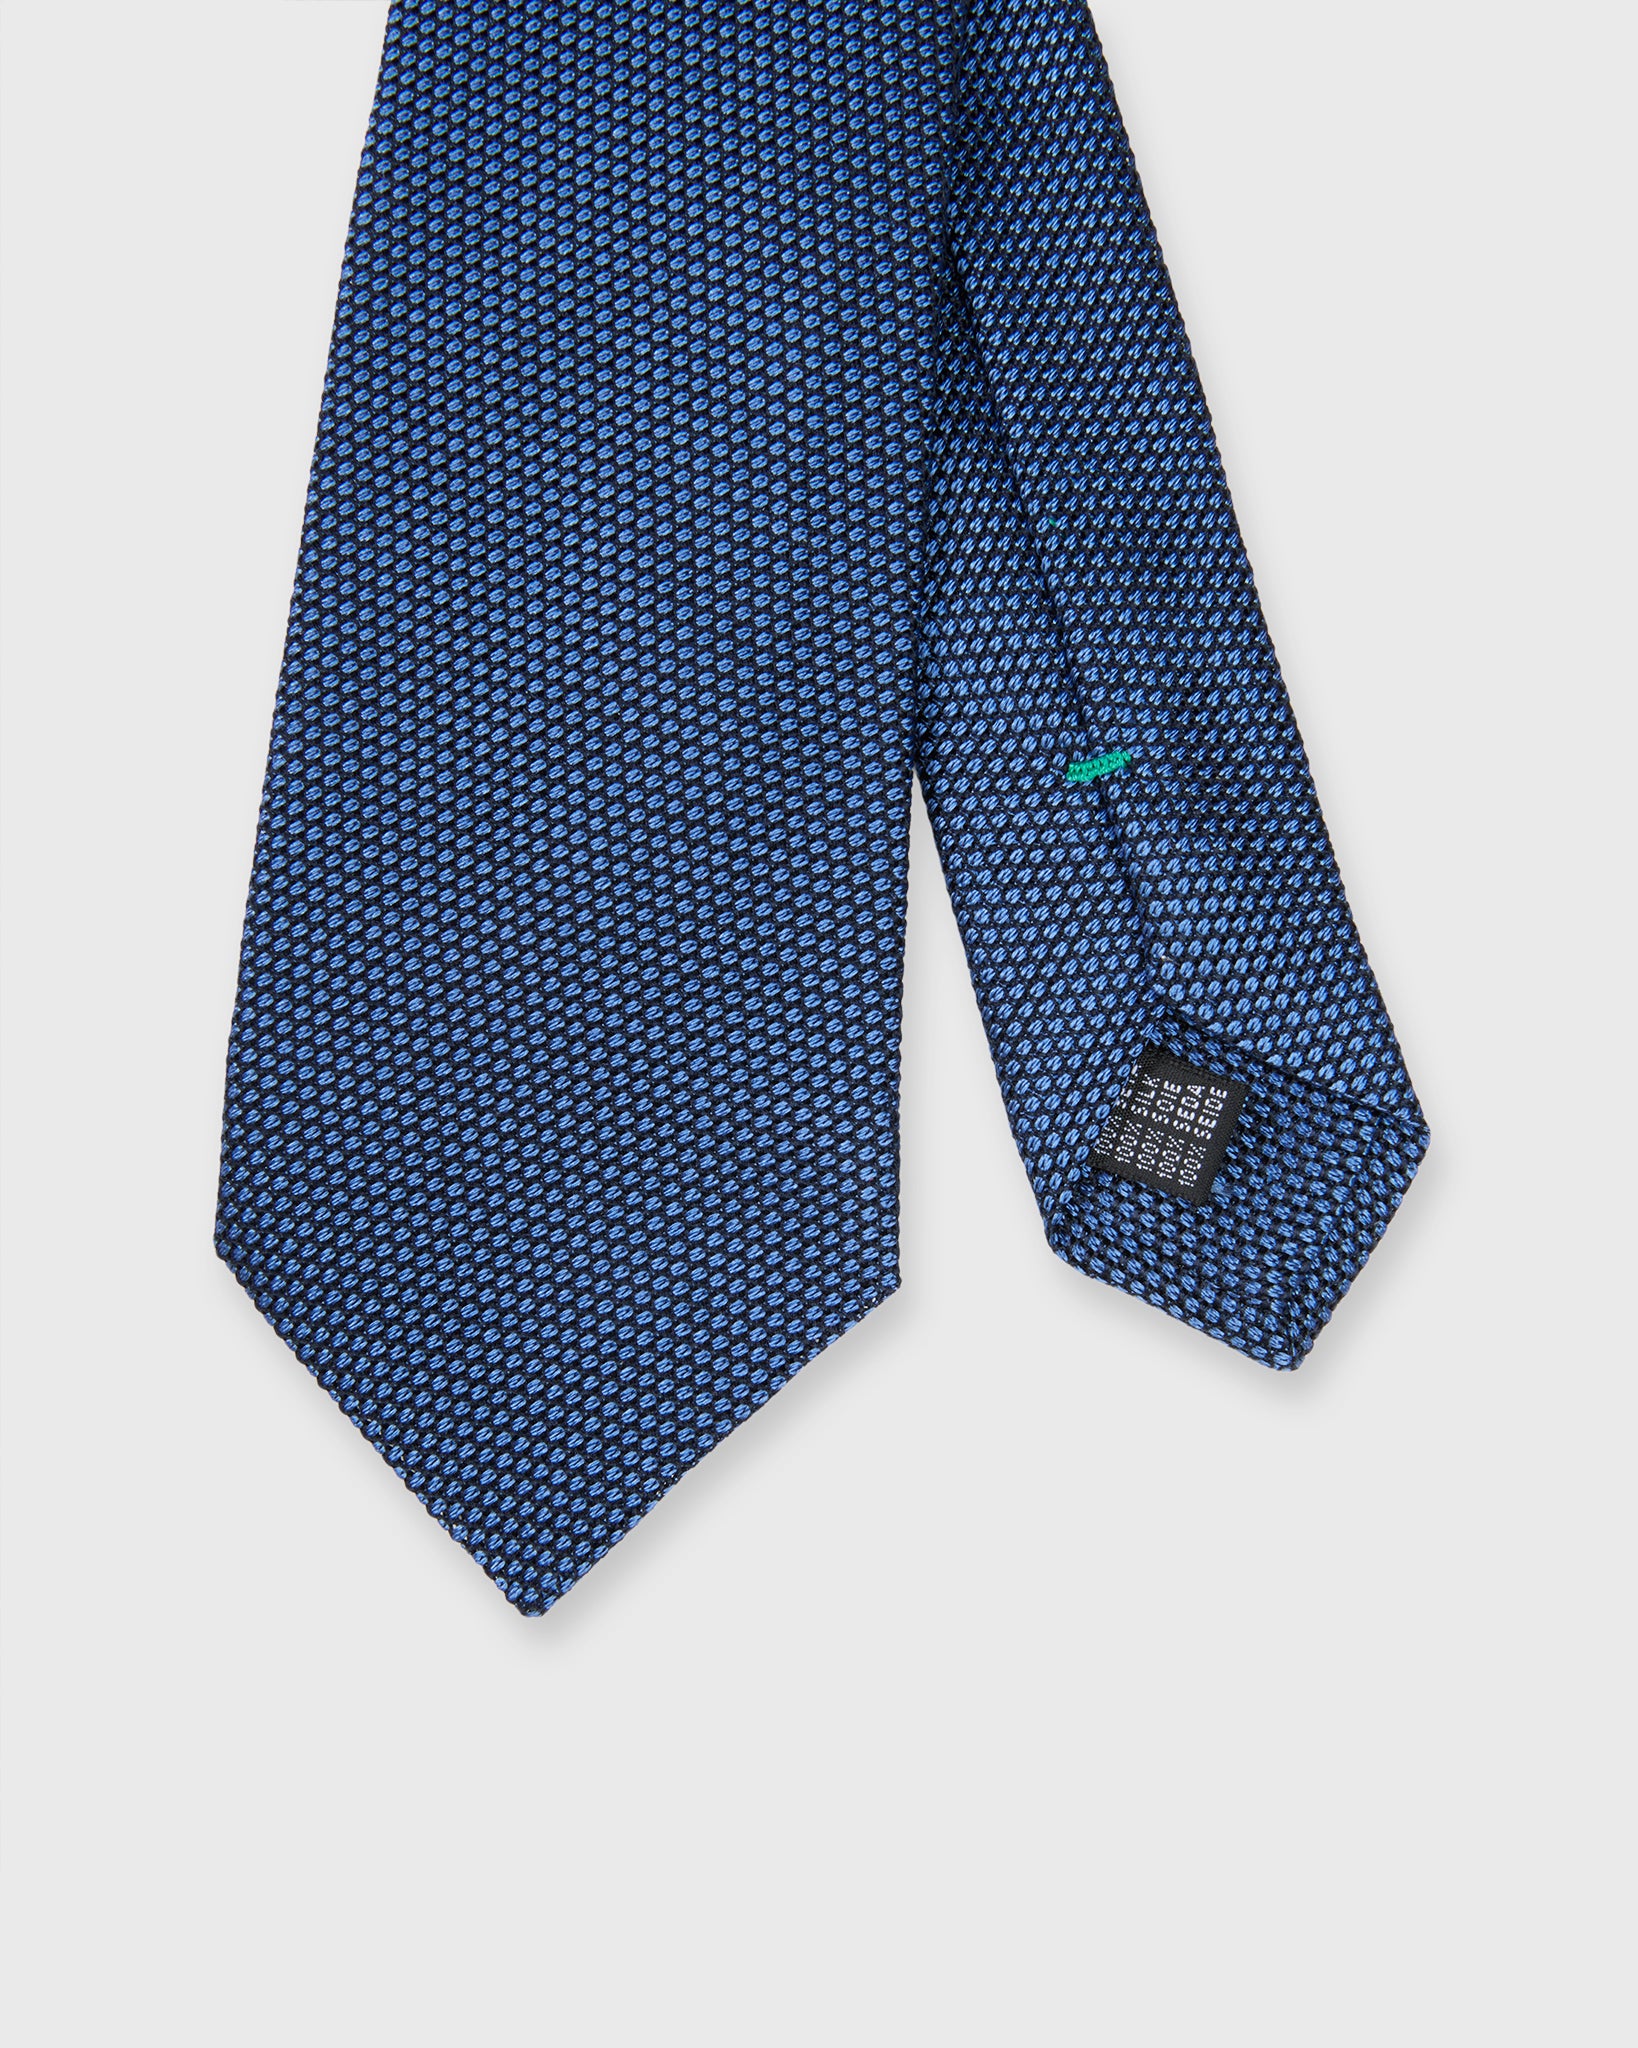 Silk Fino Grenadine Tie in Mid-Blue